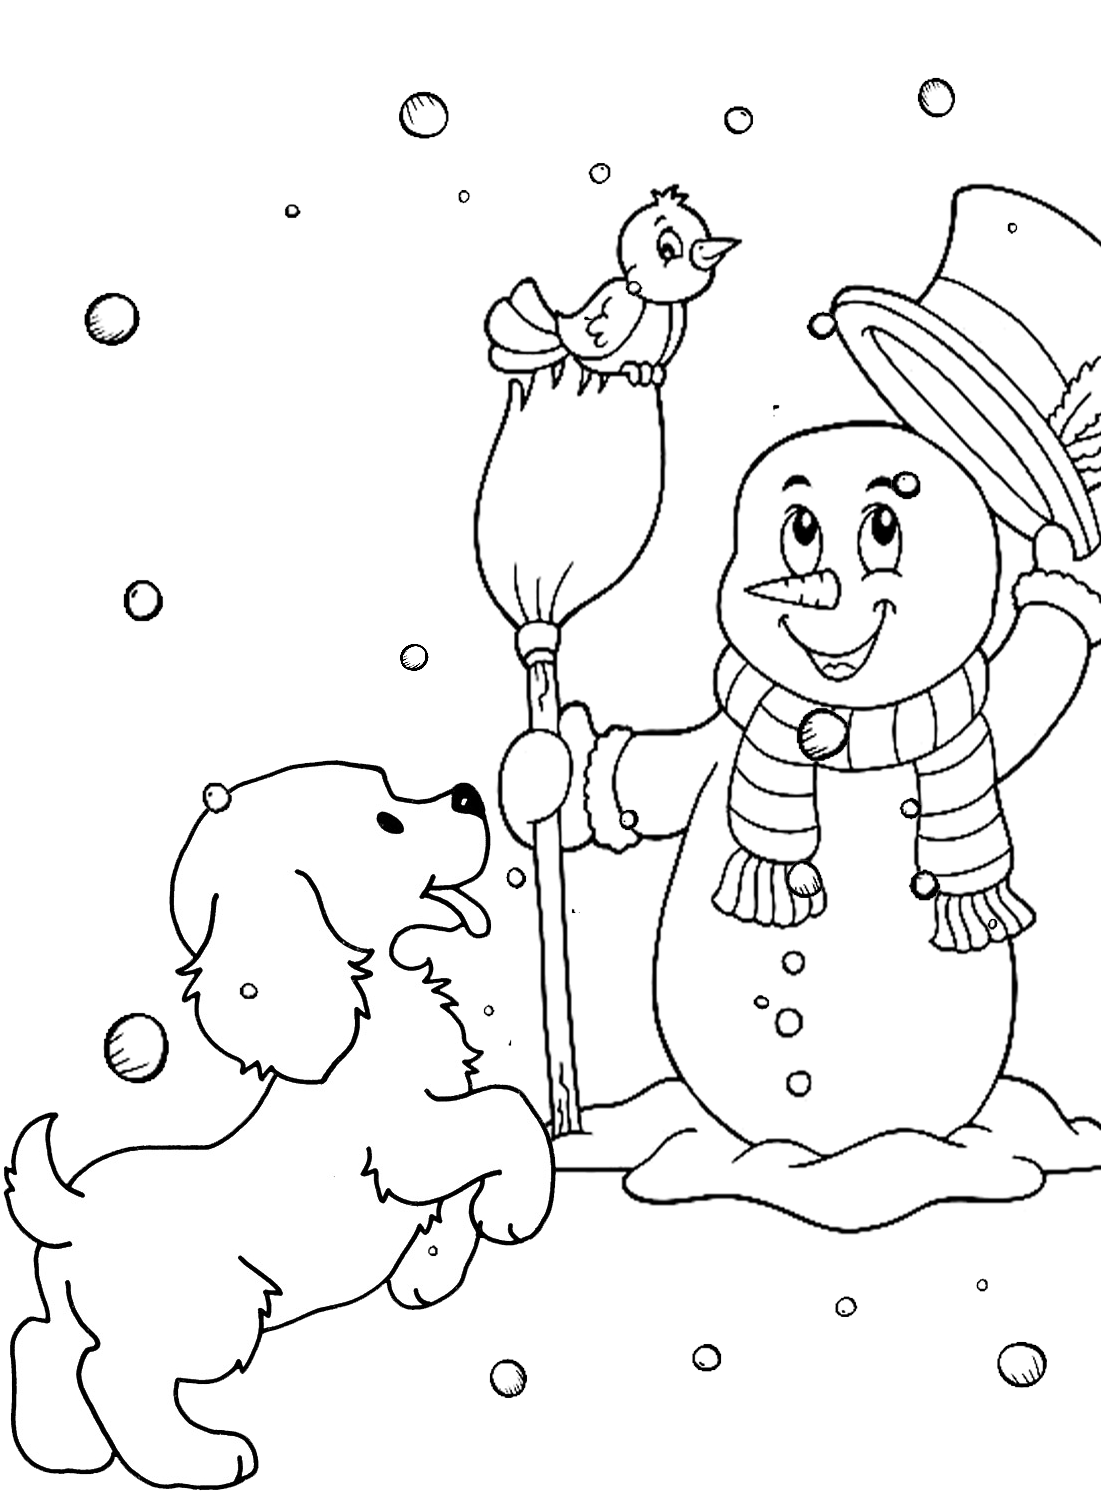 Página para colorear de muñeco de nieve y cachorro de Puppy